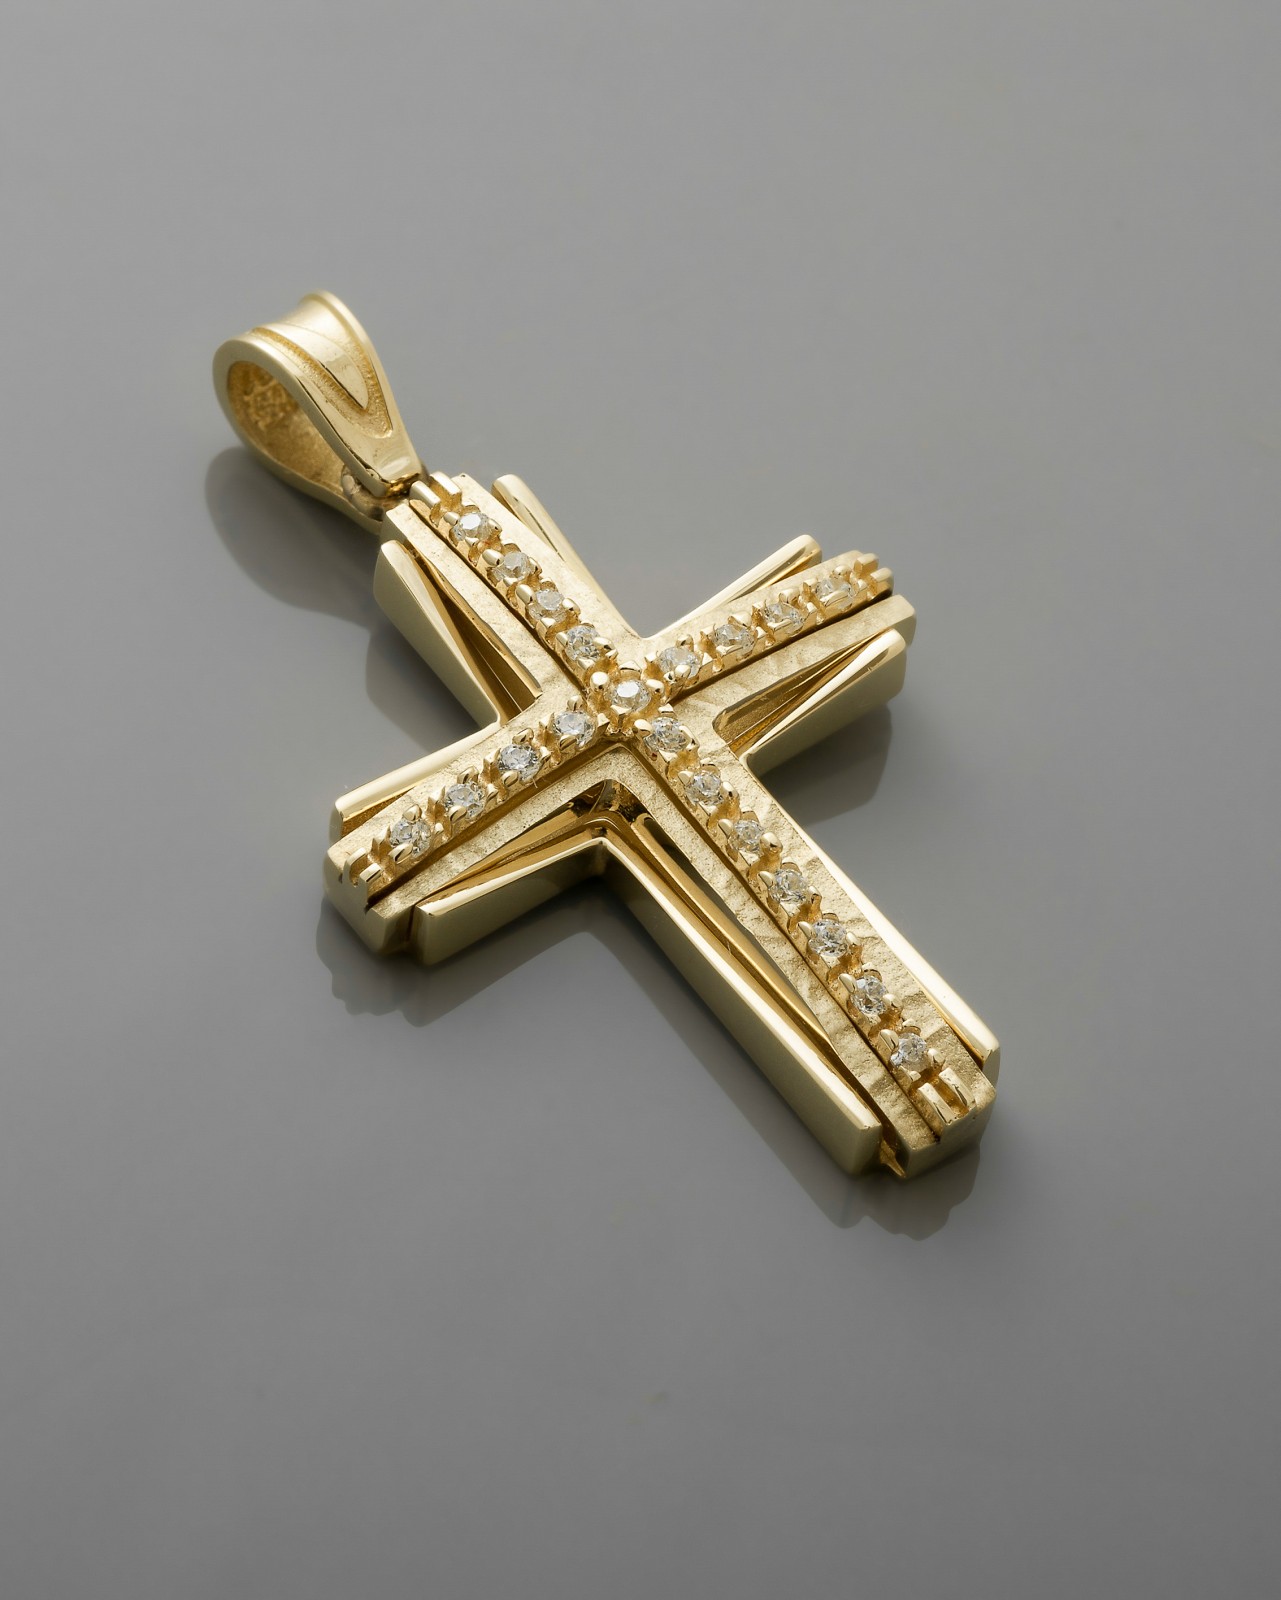 Σταυρός χρυσός valoro με τρία επίπεδα ανάγλυφες λεπτομέρειες και πολύτιμους λίθους.